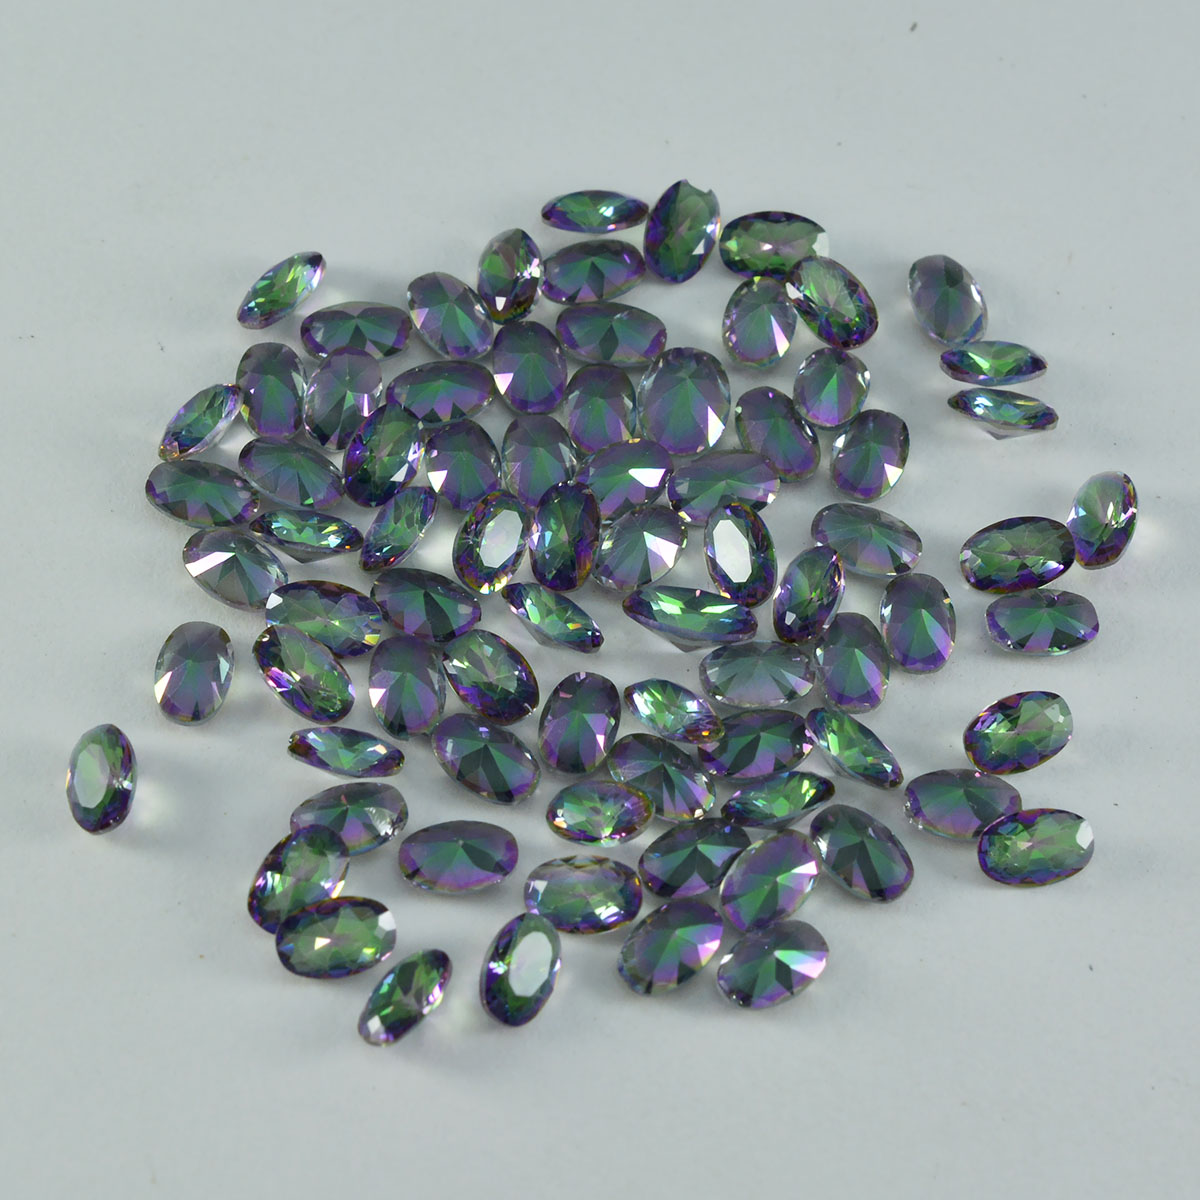 Riyogems 1 pièce de quartz mystique multicolore à facettes 4x6mm forme ovale a1 qualité pierres précieuses en vrac